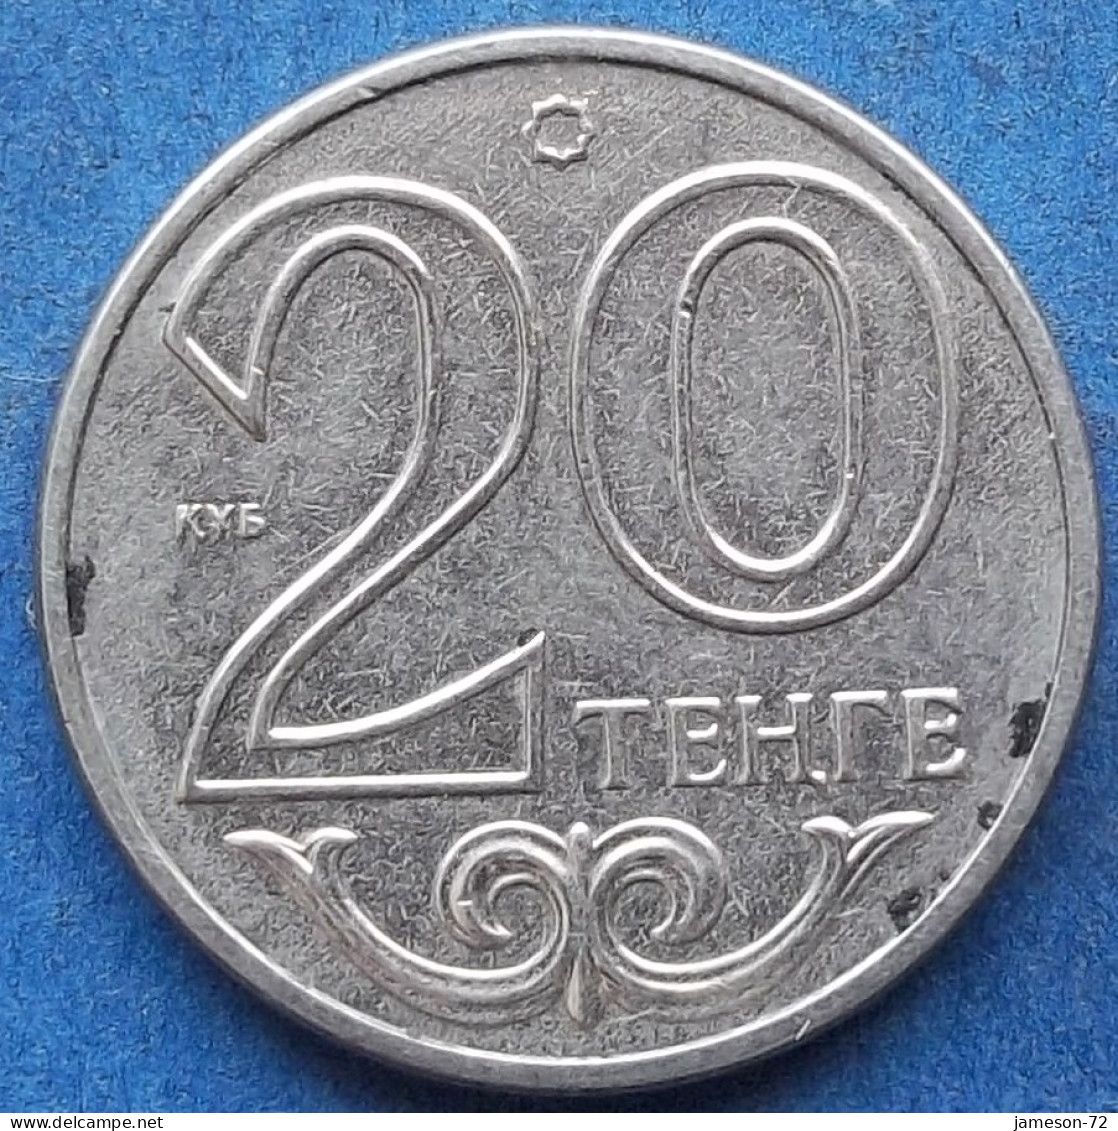 KAZAKHSTAN - 20 Tenge 2018 Independent Republic (1991) - Edelweiss Coins - Kazakistan